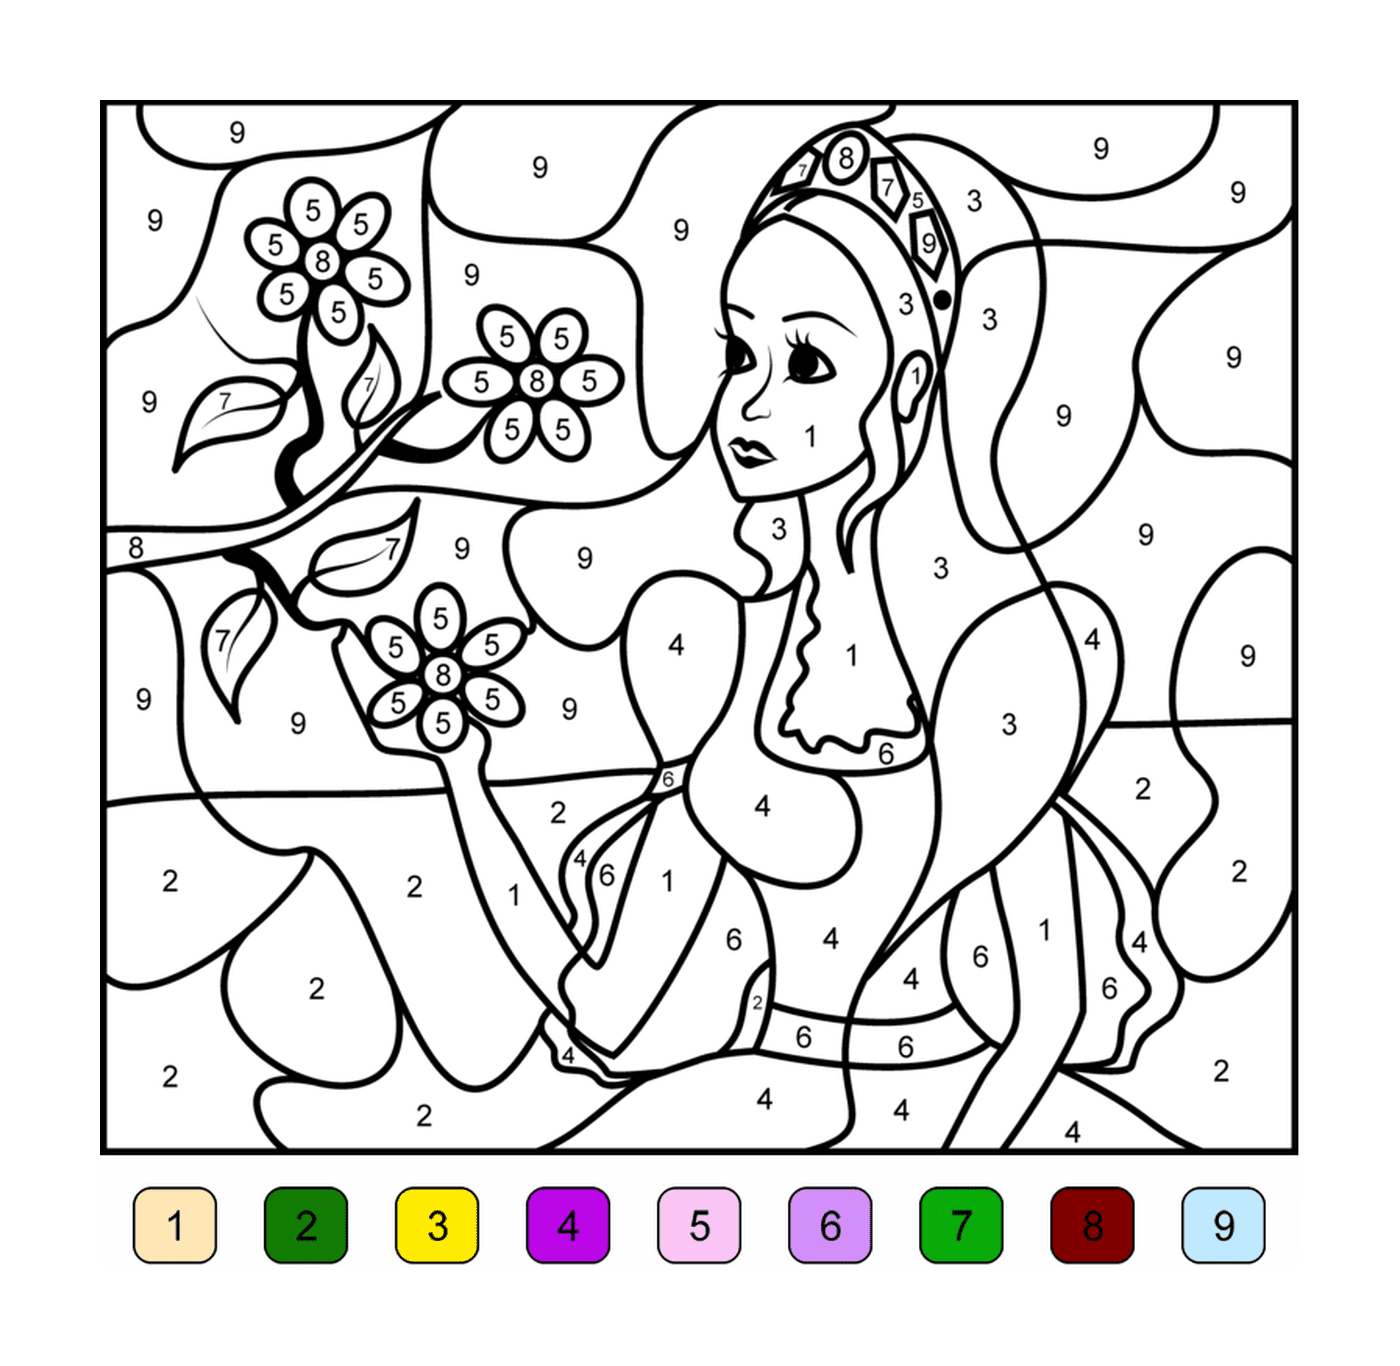  امرأة مع باقة من الزهور الملونة بالعدد 